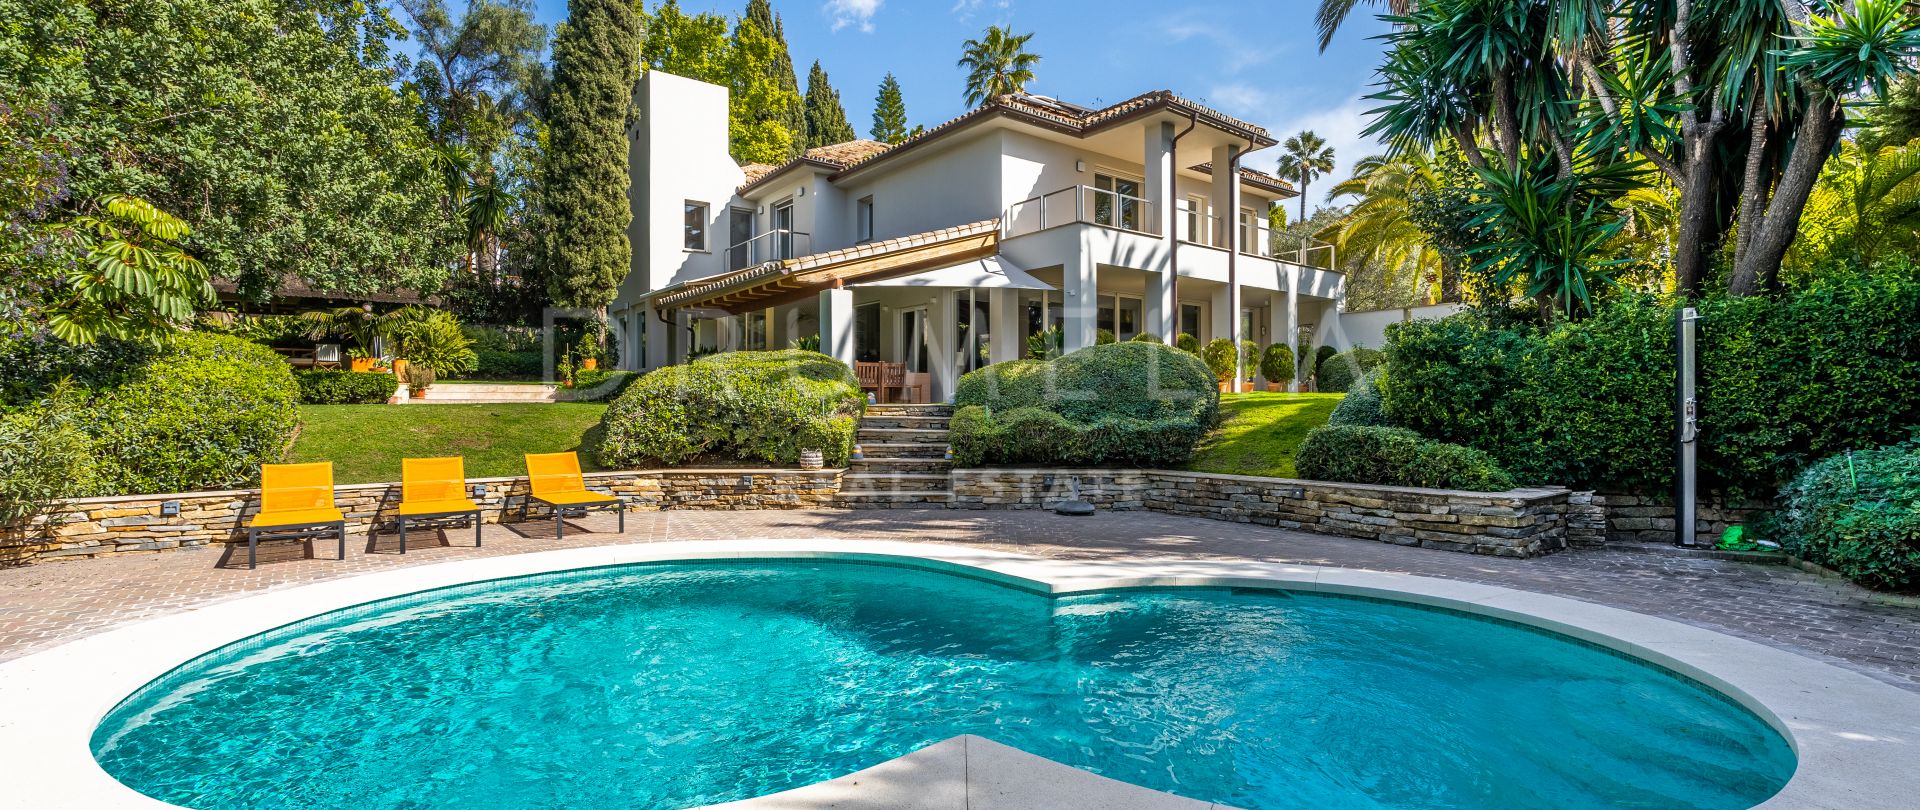 Impresionante villa de lujo de estilo mediterráneo en Marbella Hill Club, Marbella Milla de Oro